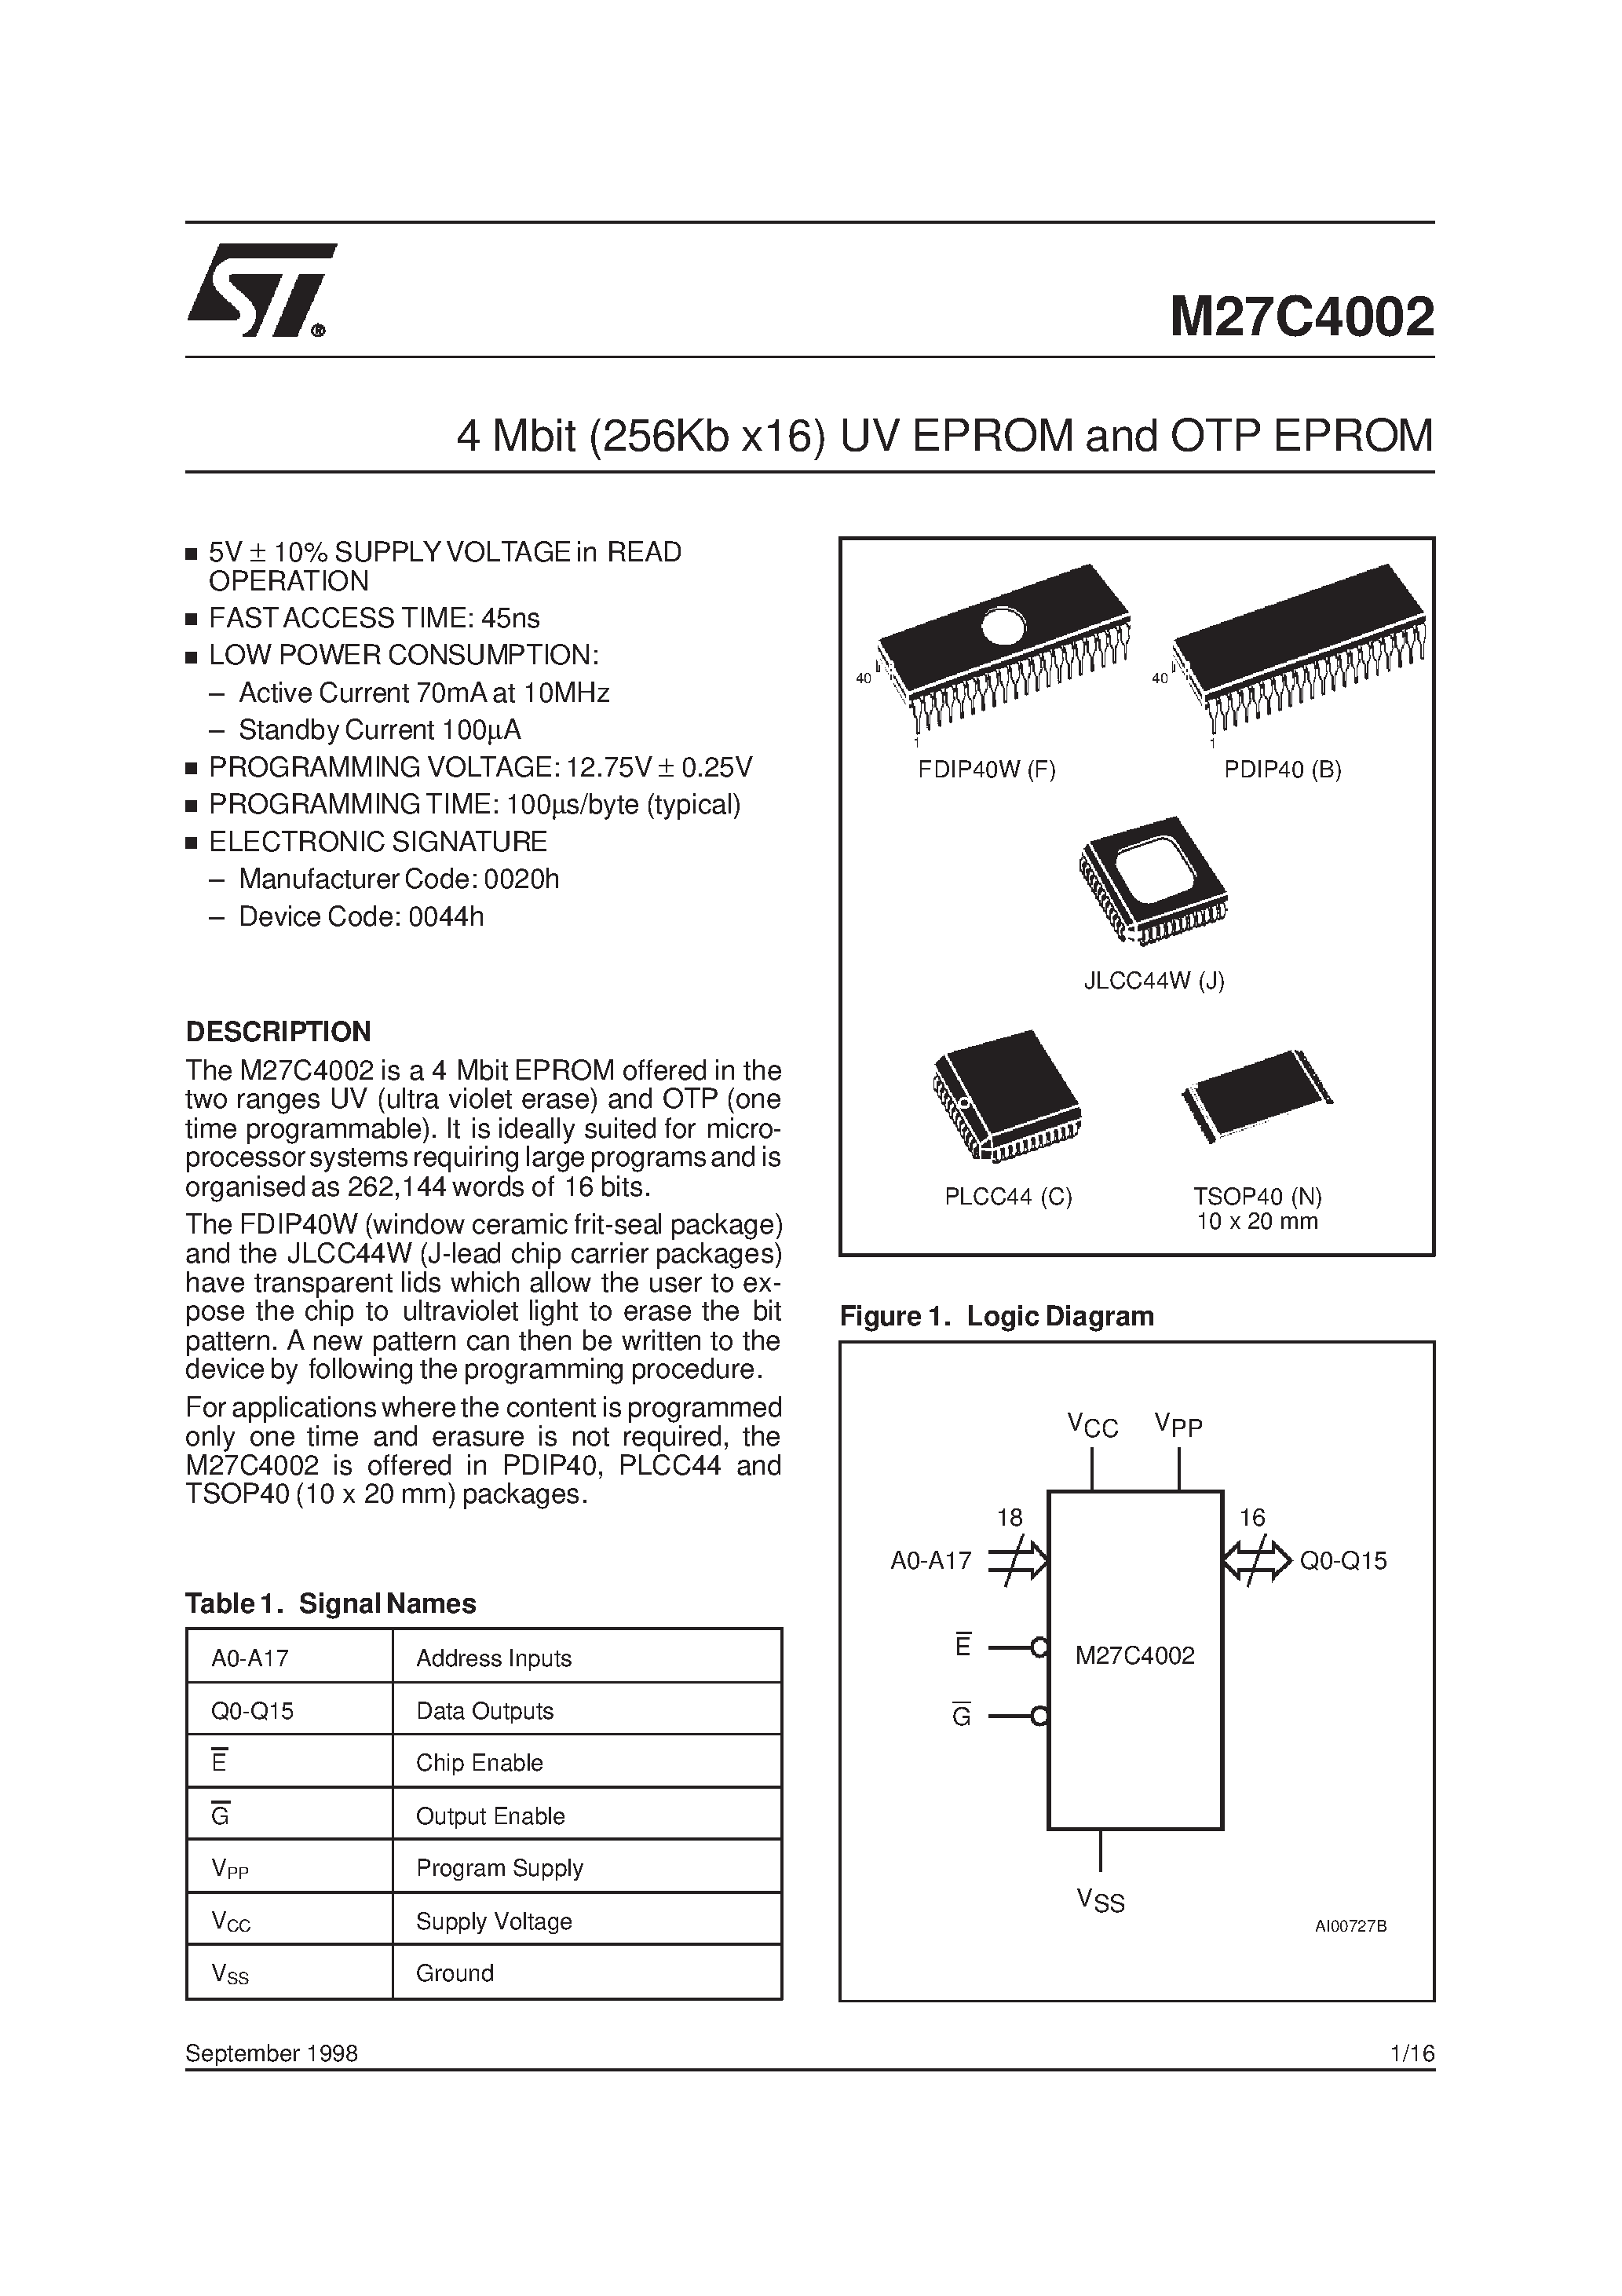 Datasheet M27C4002-10XB6X - 4 Mbit 256Kb x16 UV EPROM and OTP EPROM page 1